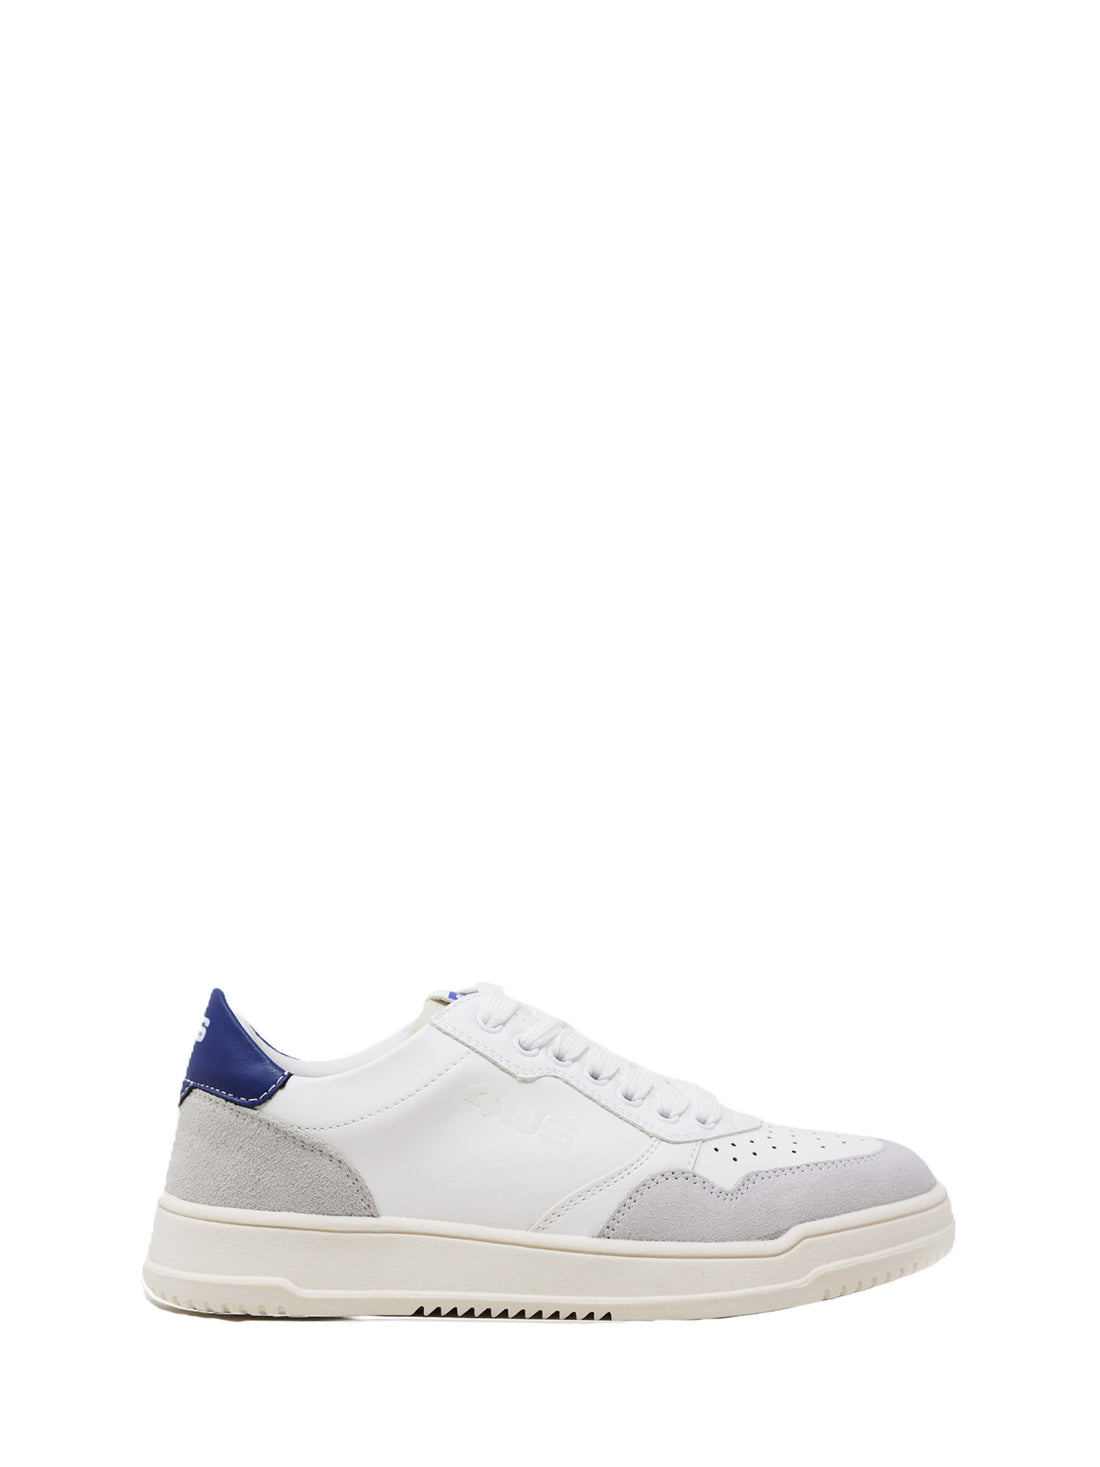 Sneakers Bianco Blu 4us